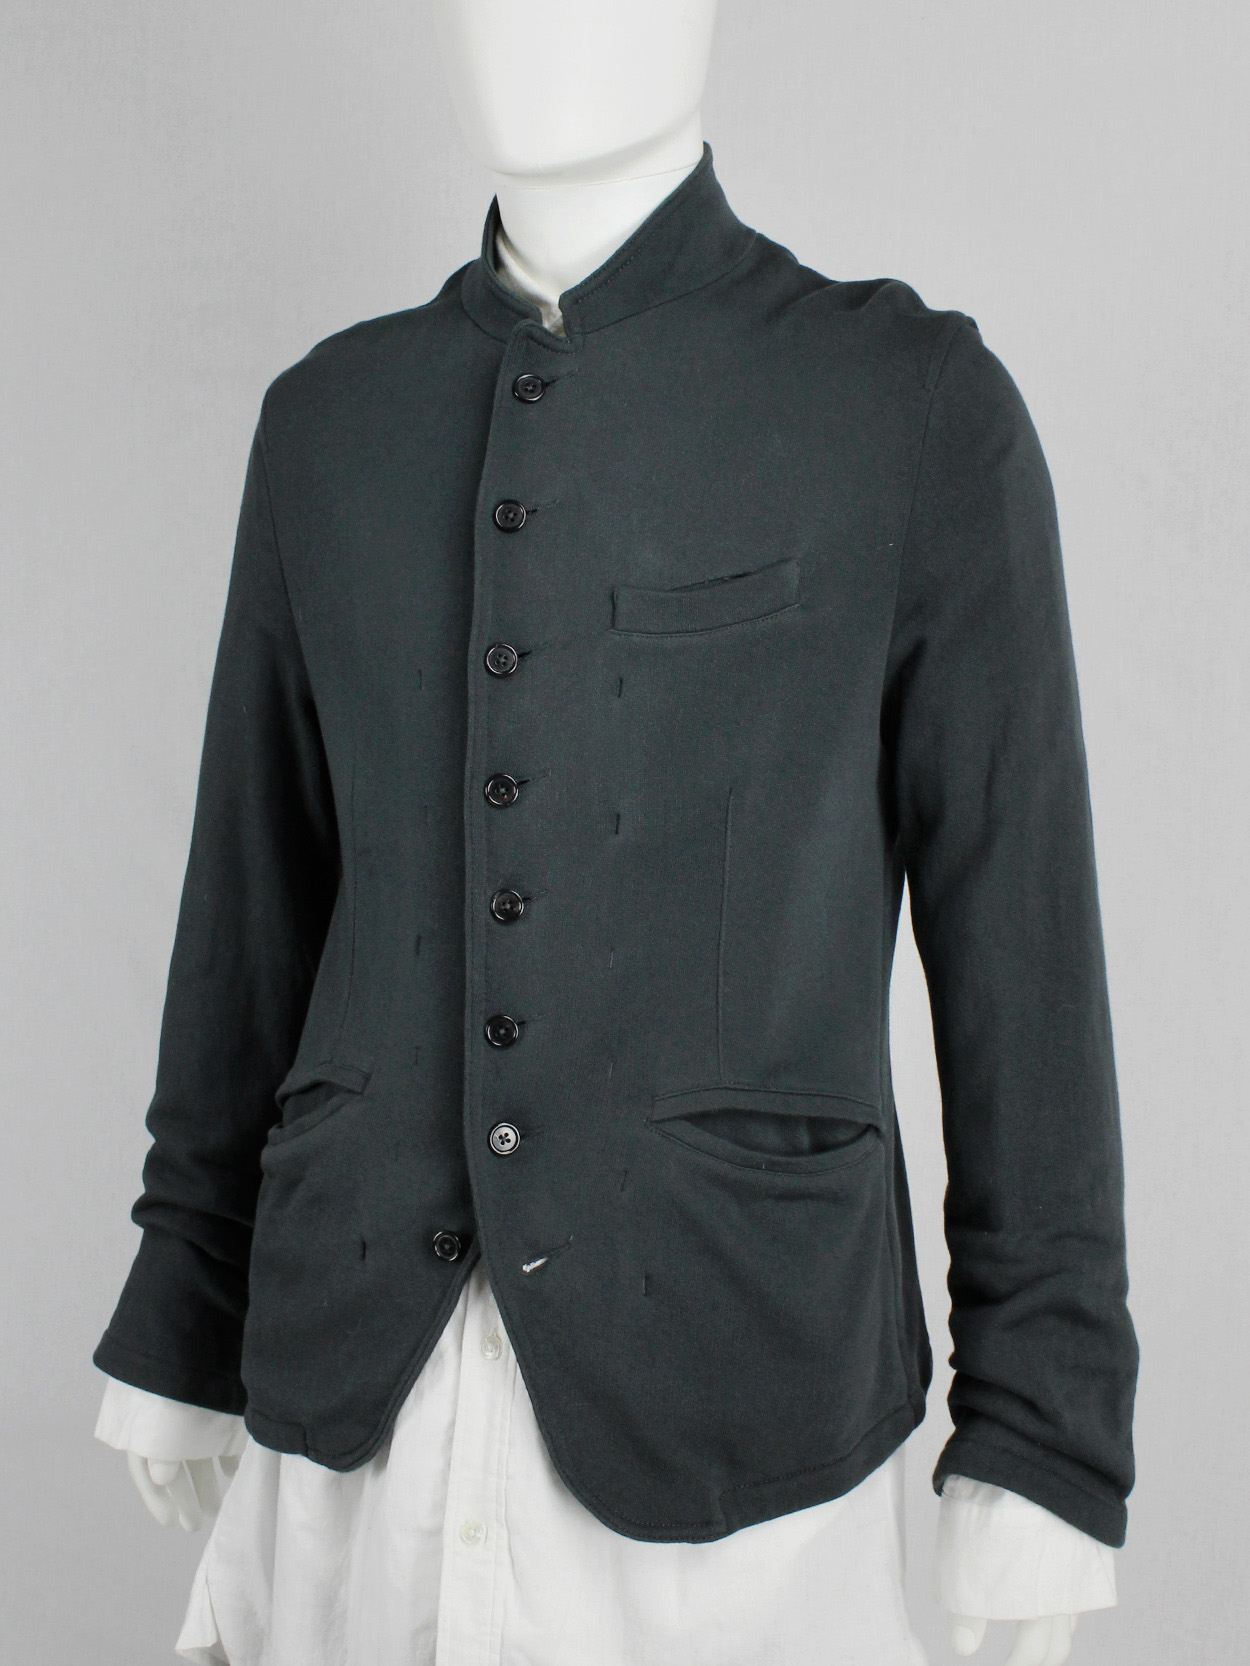 vaniitas Ann Demeulemeester dark green woven blazer with multiple buttons (5)